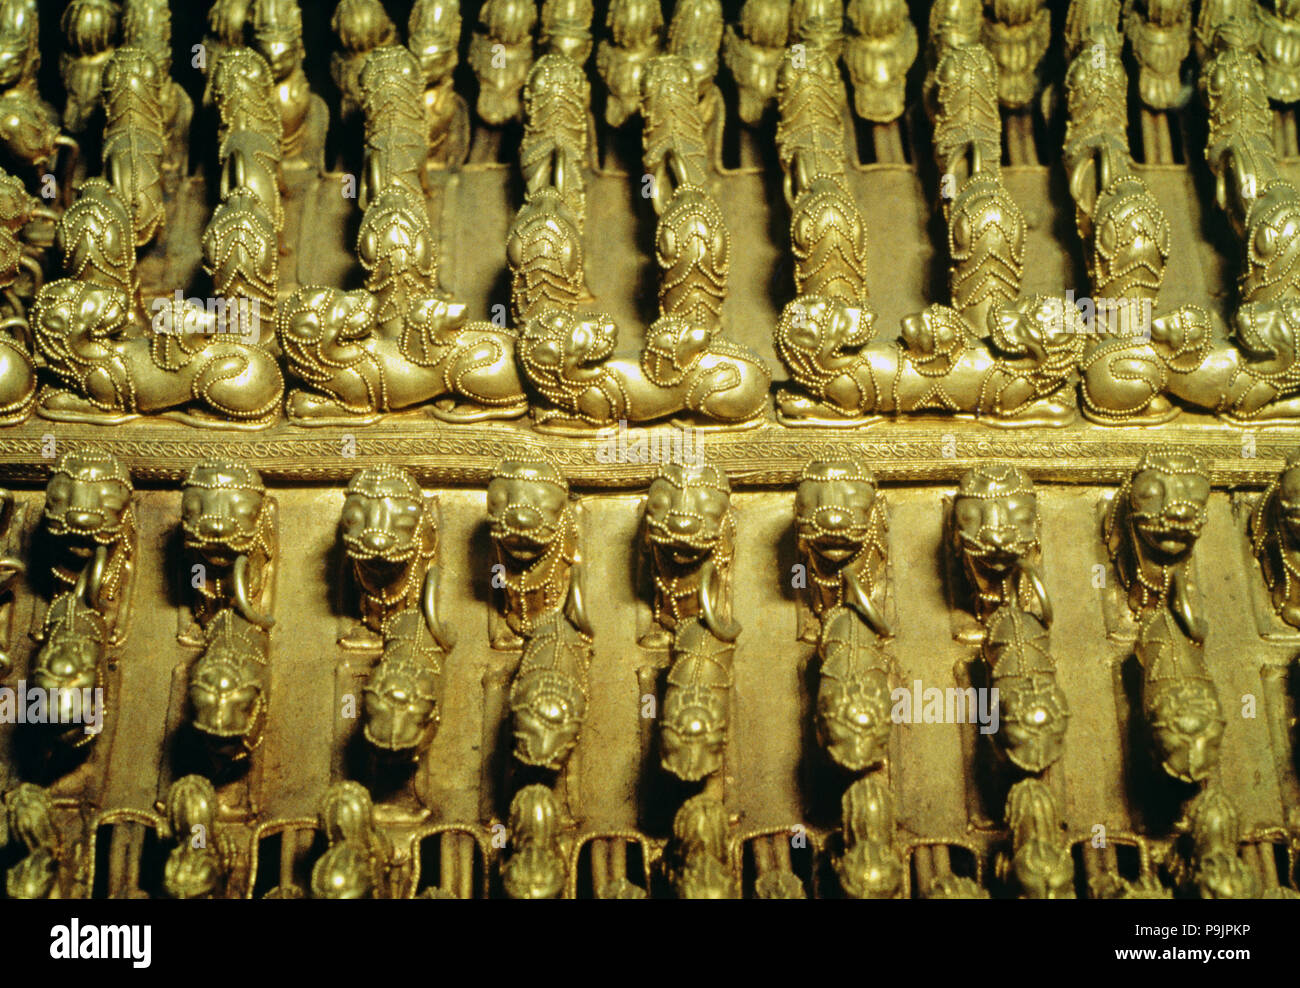 Dettaglio di un pettorale in oro con figure zoomorfe di forma rotonda. Foto Stock